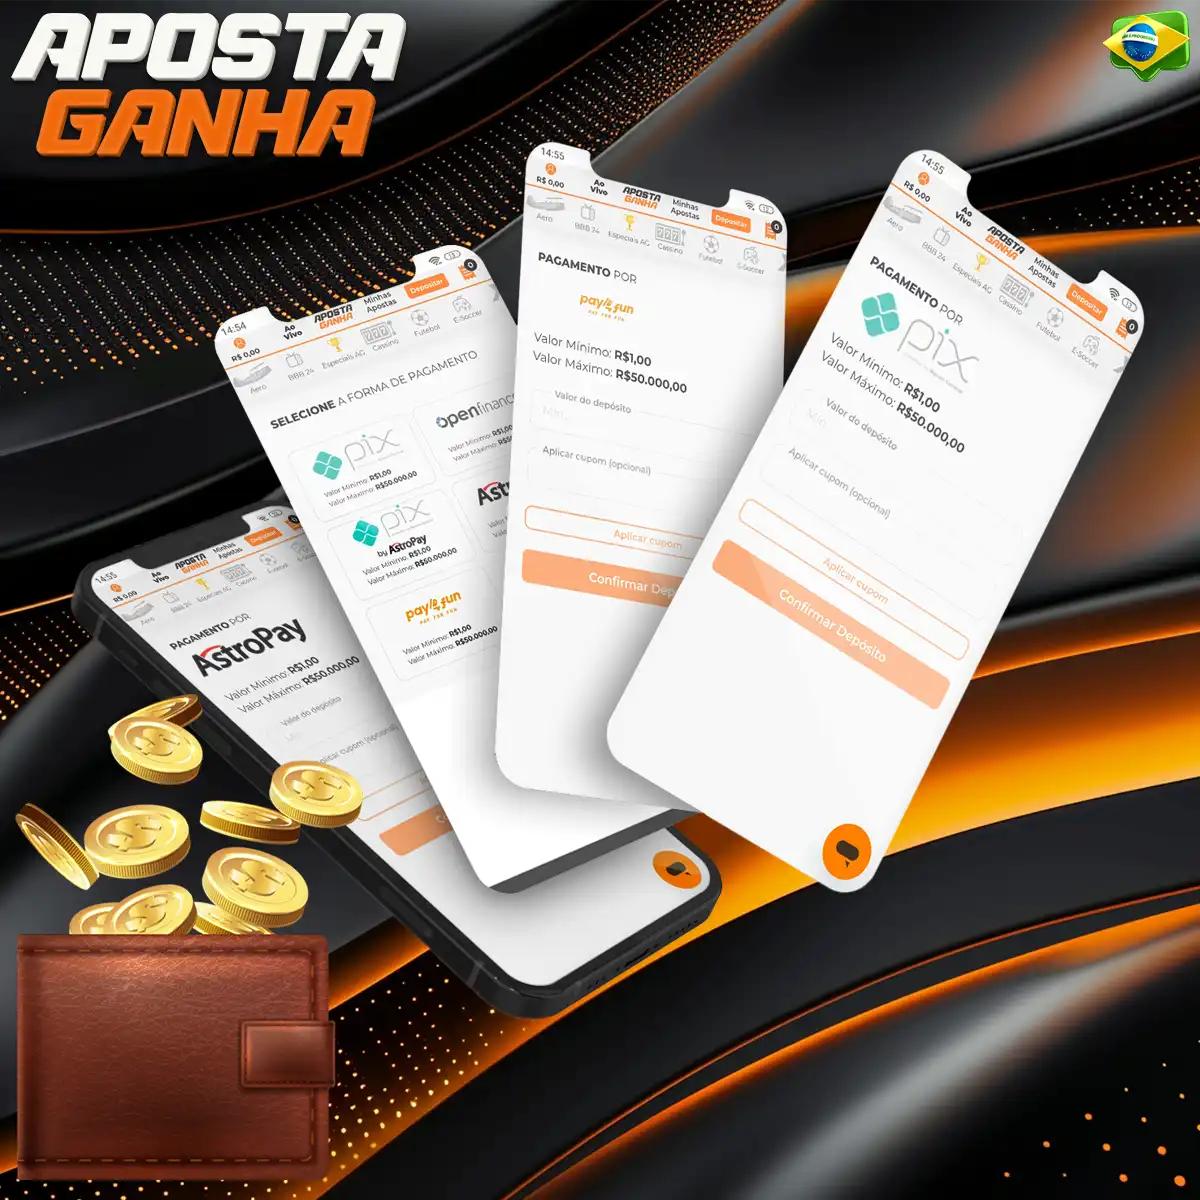 O aplicativo Aposta Ganha oferece várias opções de pagamento